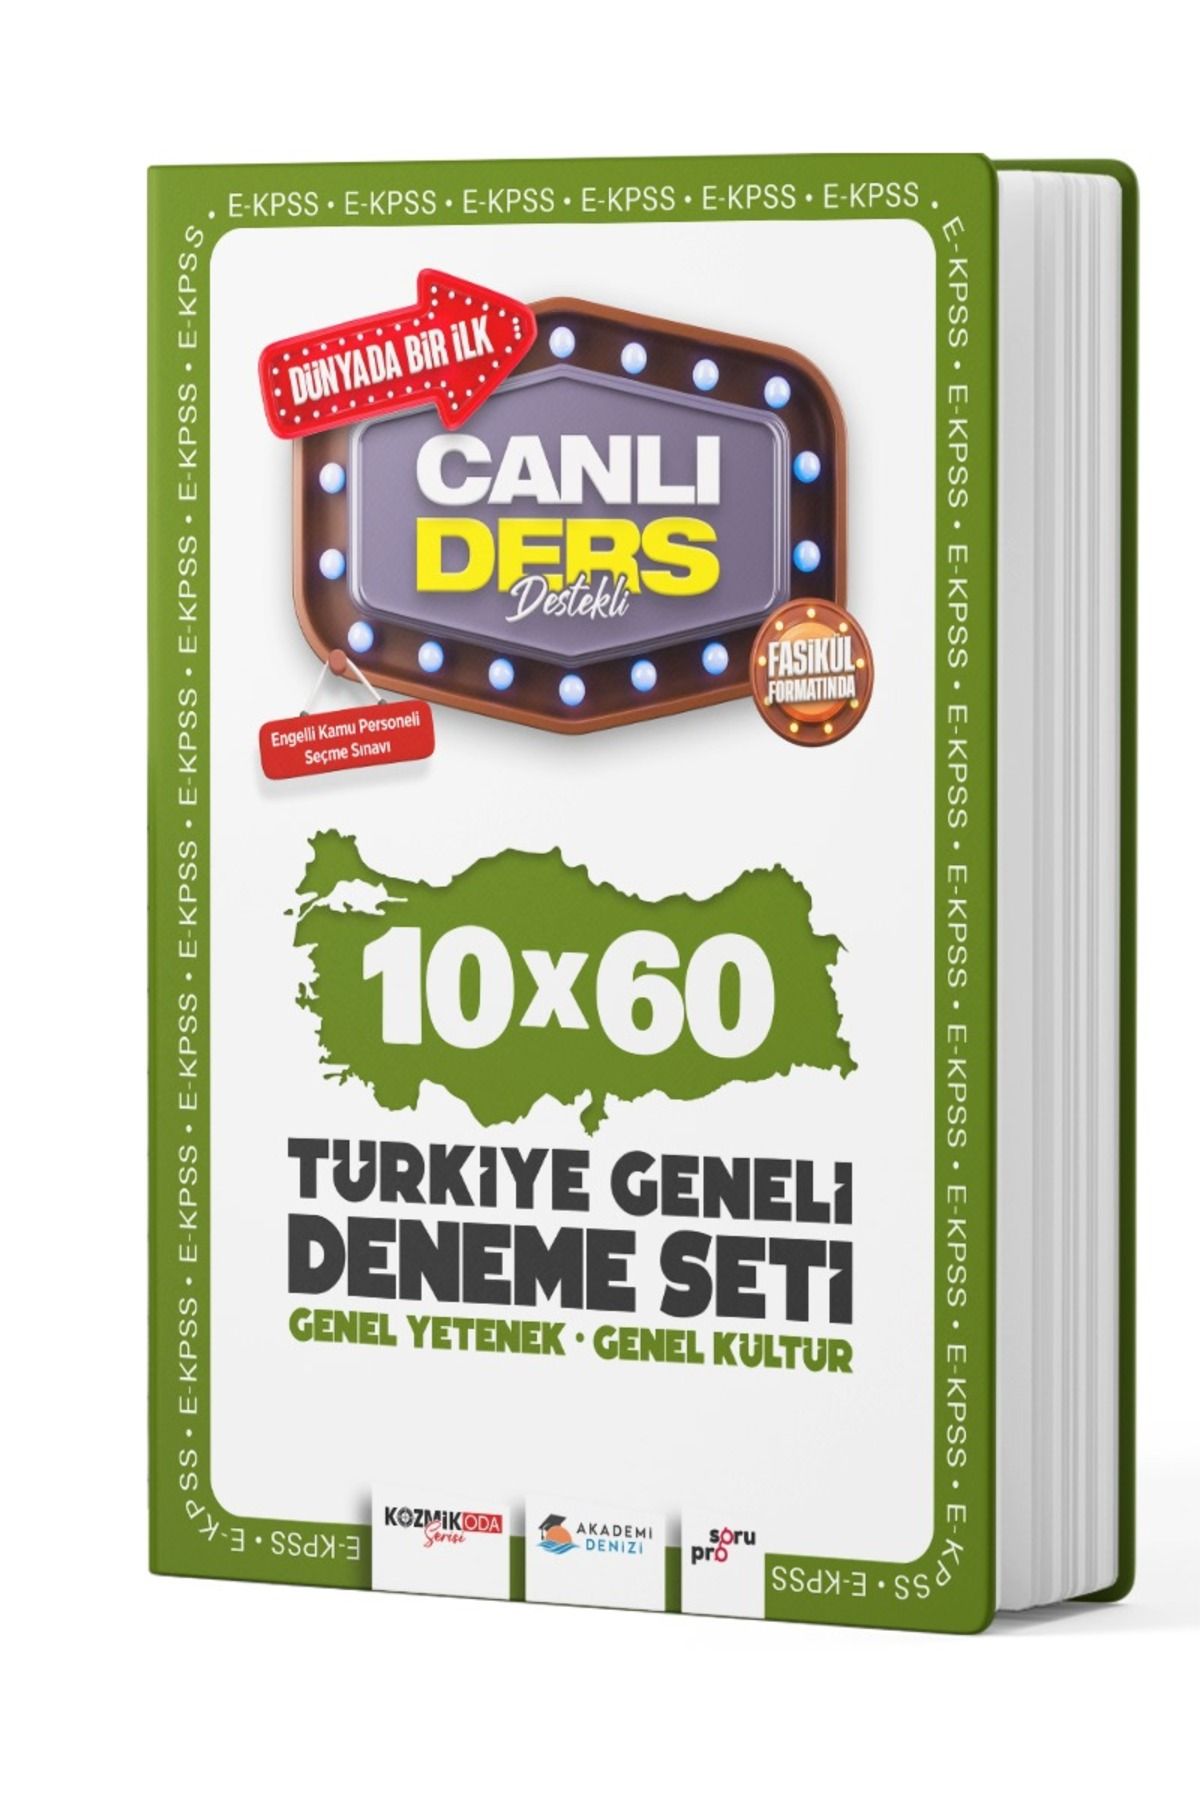 akademi denizi EKPSS Genel Kültür Genel Yetenek 10 x 60 Türkiye Geneli Deneme Seti